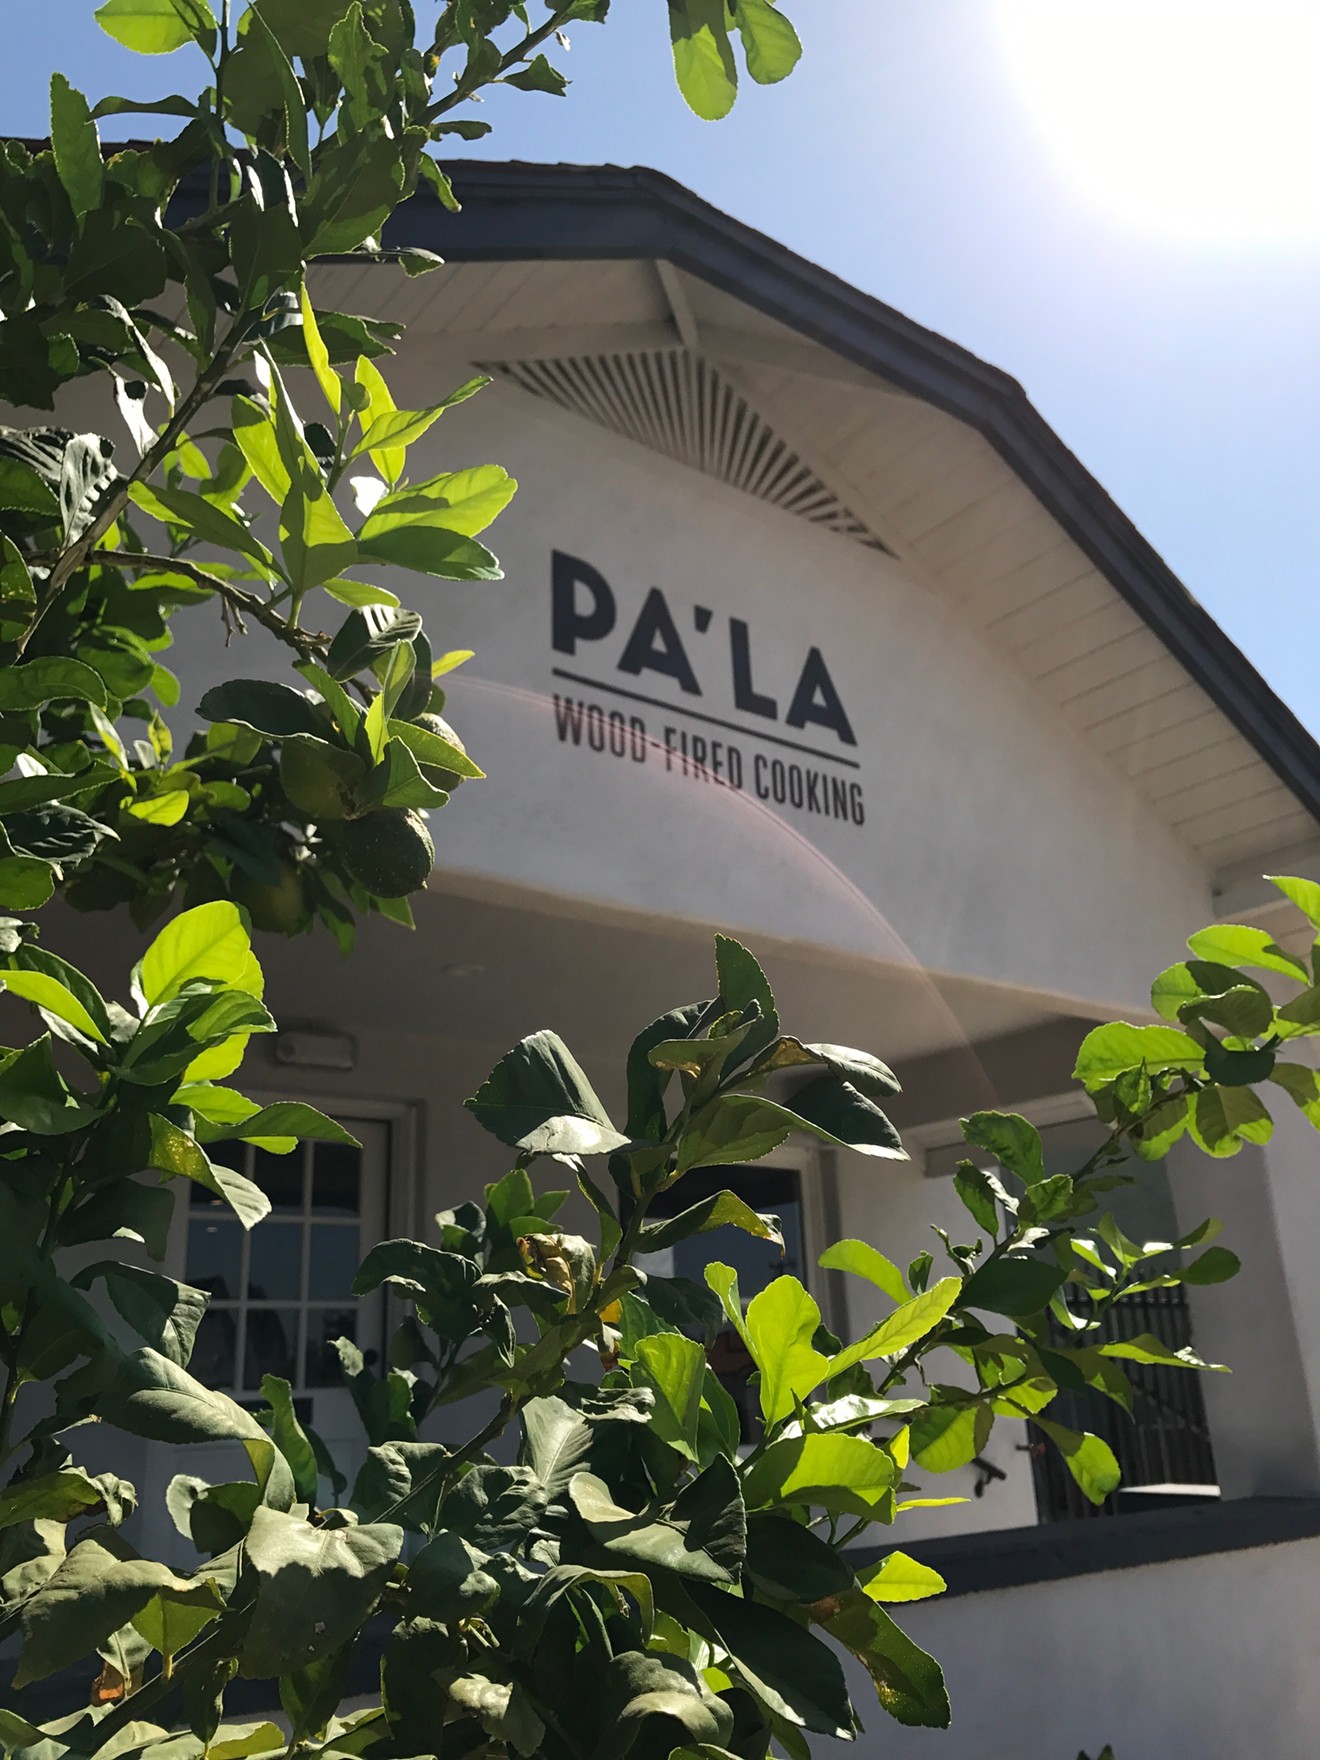 Pa'La has opened.